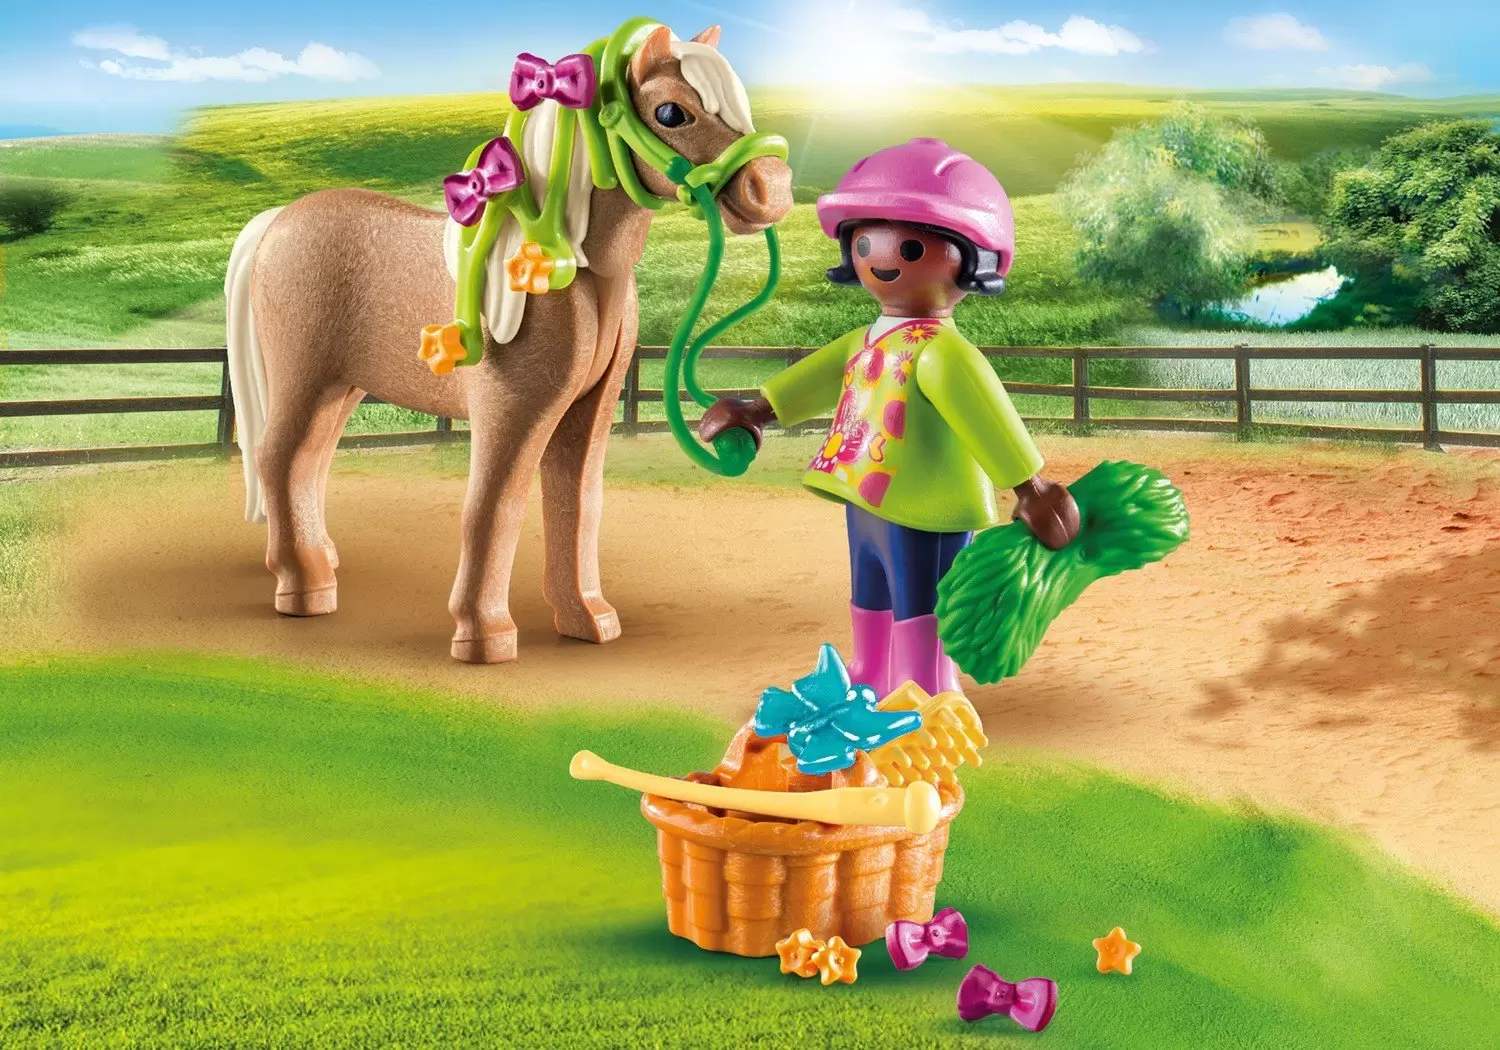 Playmobil SpecialPlus - Girl with Pony